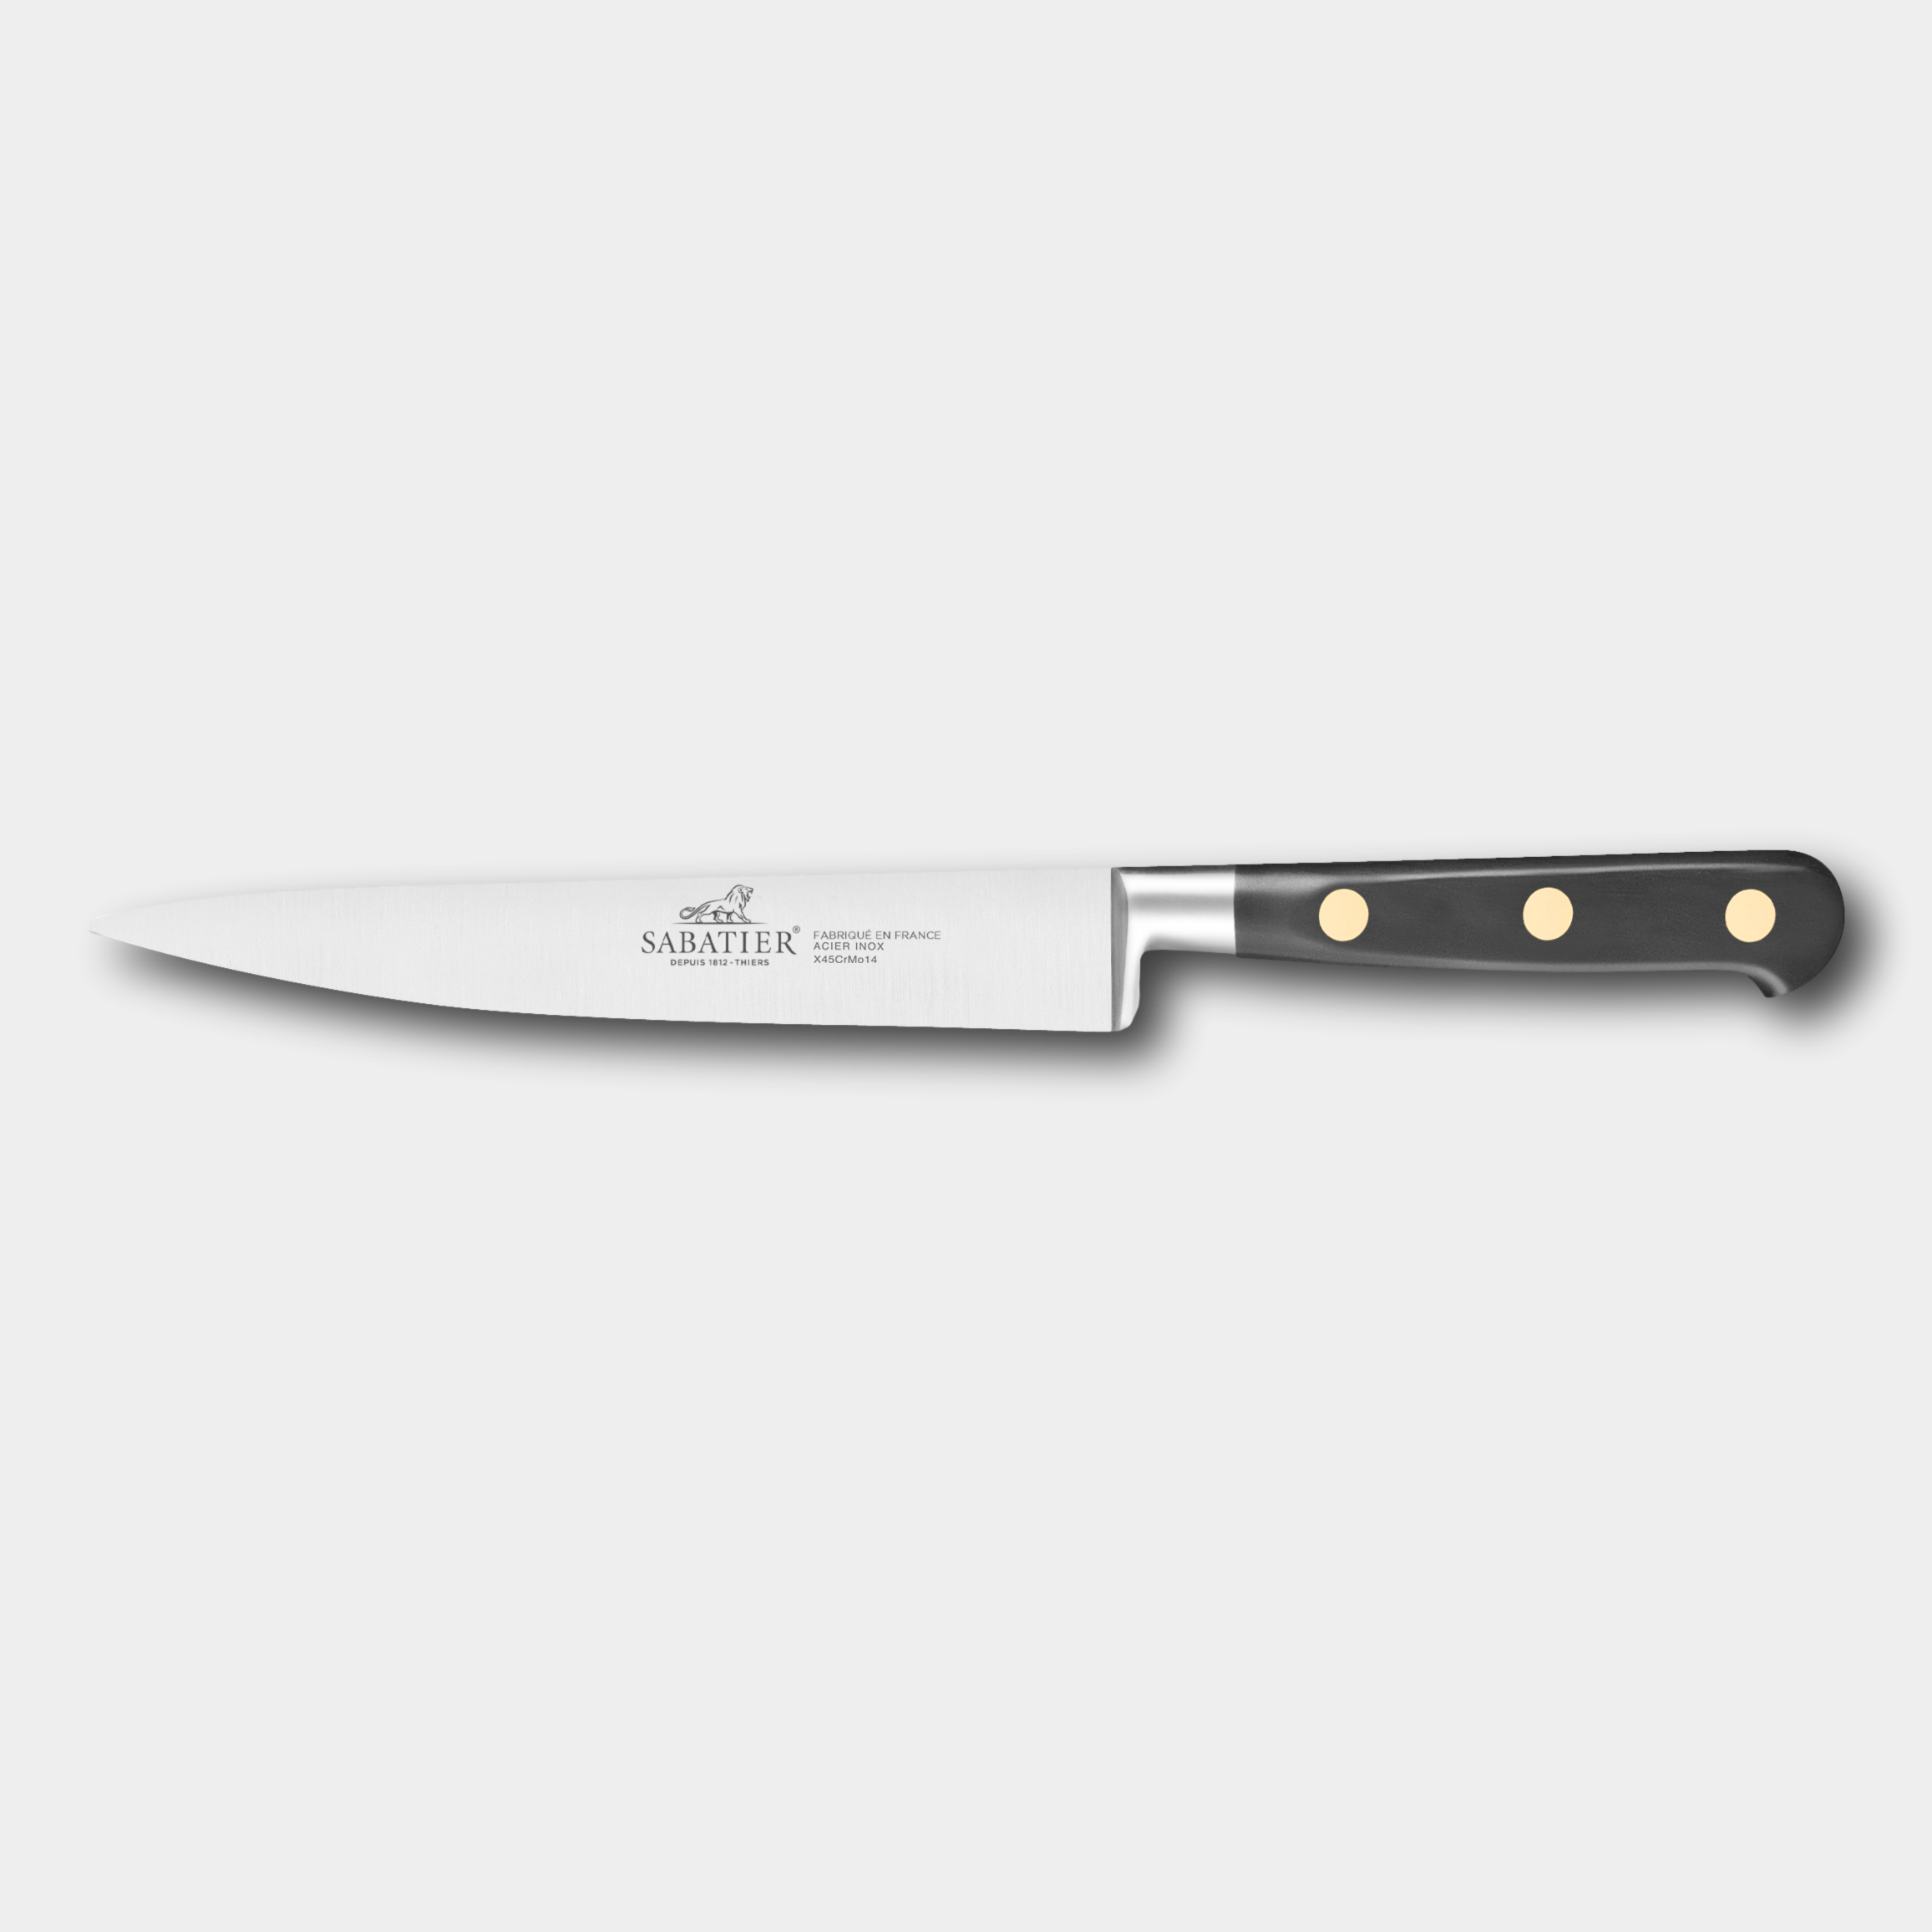 Lion Sabatier CHEF 15cm Fillet Knife